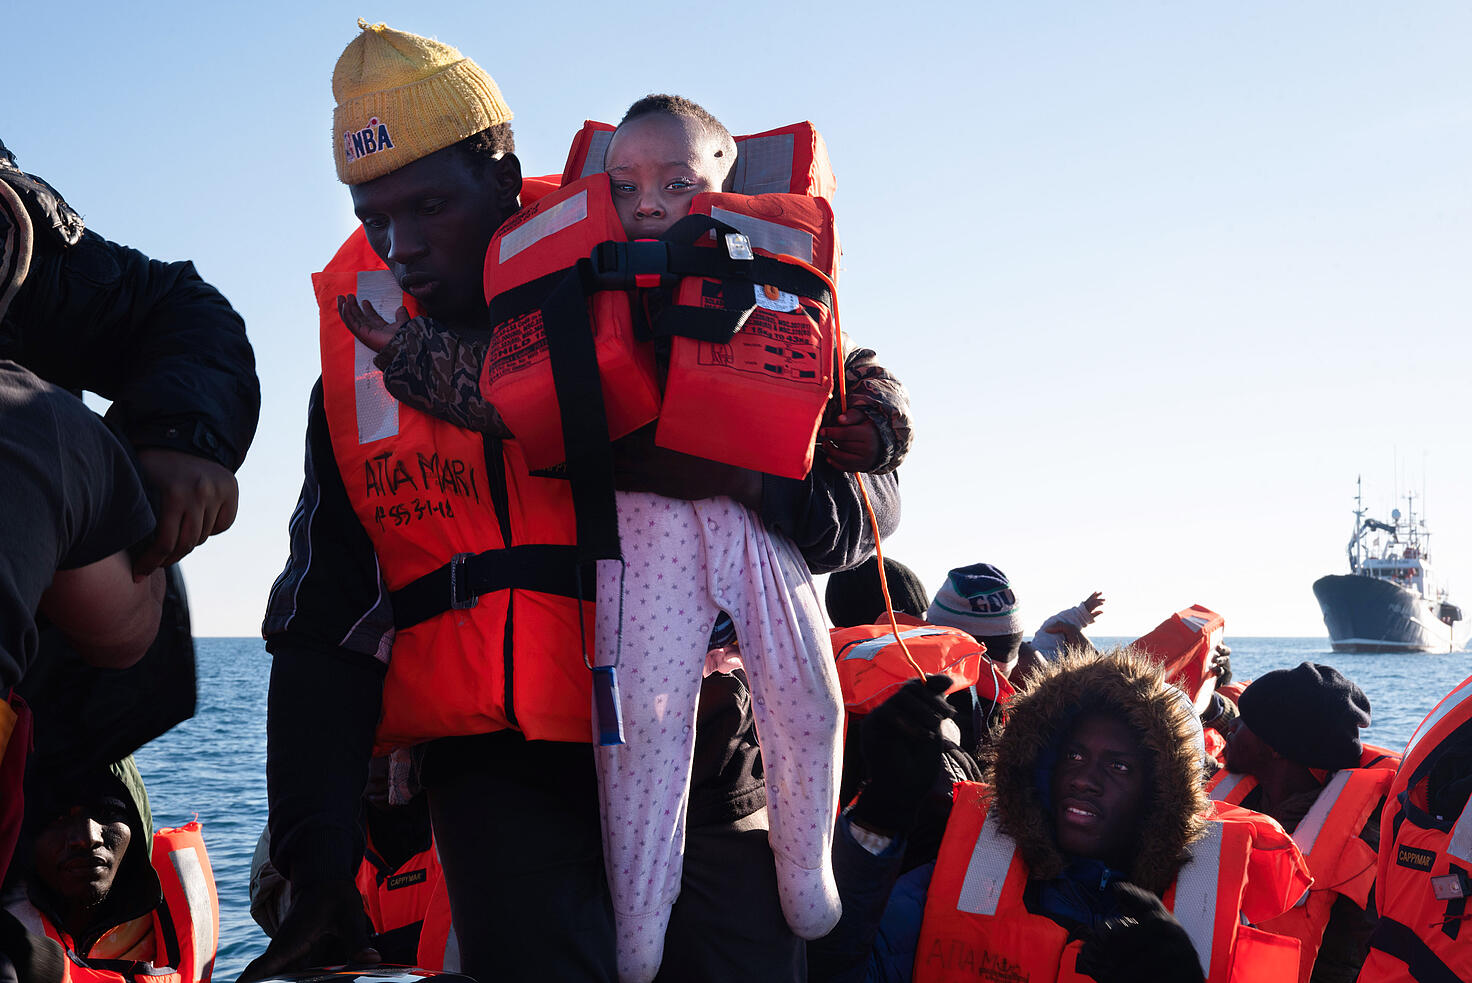 Un hombre sostiene a un bebé de 7 meses en el barco de rescate Aita Mari, tras el rescate de 40 personas en una zona cercana a la isla de Lampedusa...